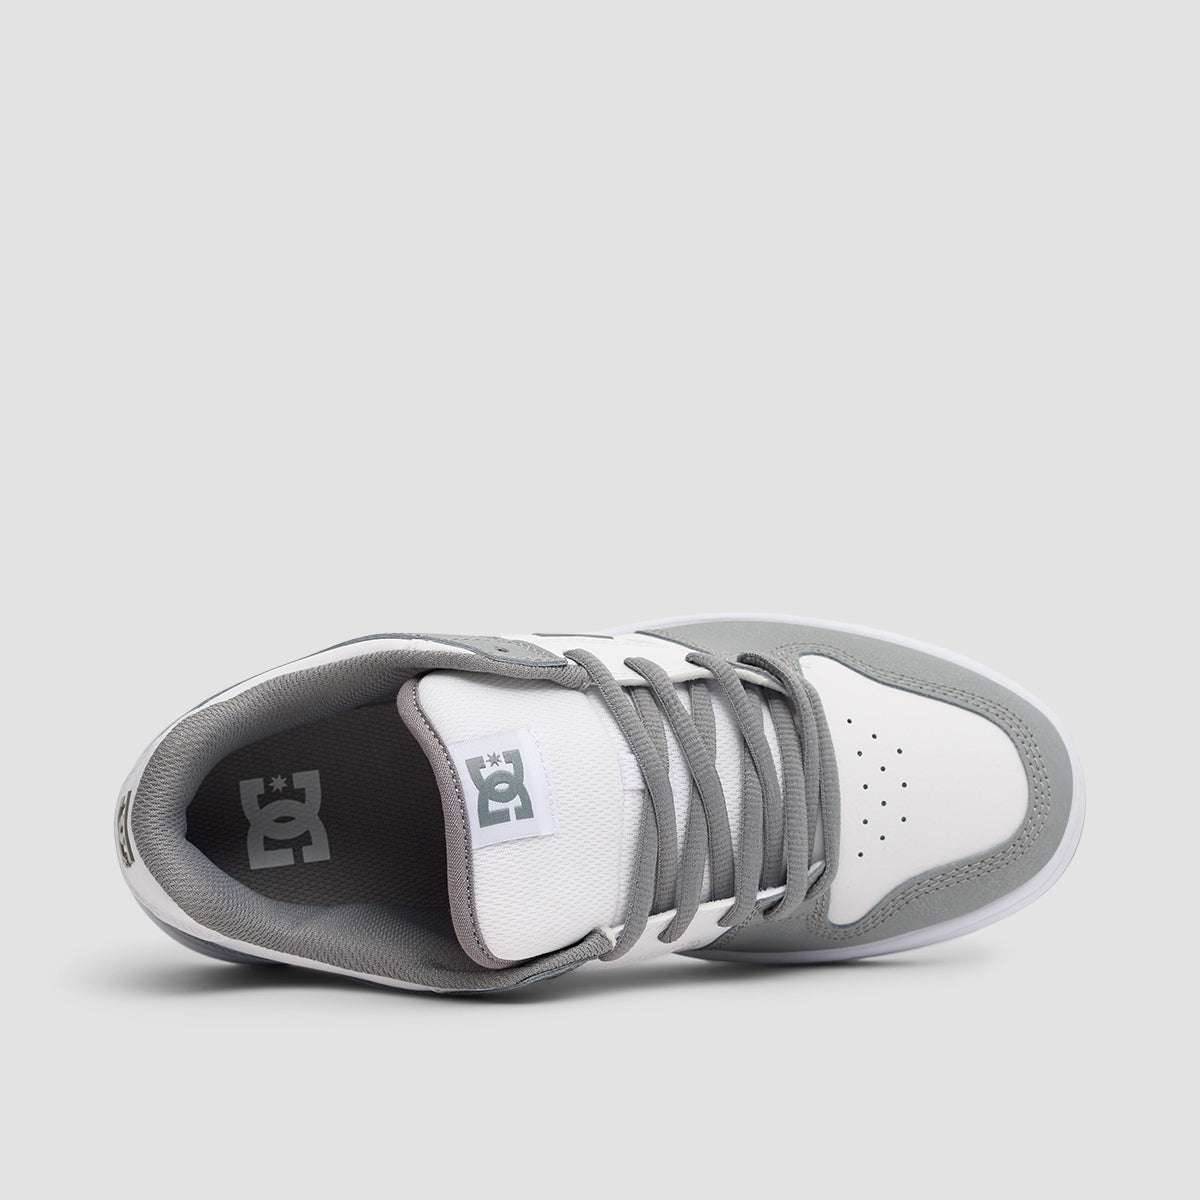 DC Manteca 4 Shoes - White/Grey